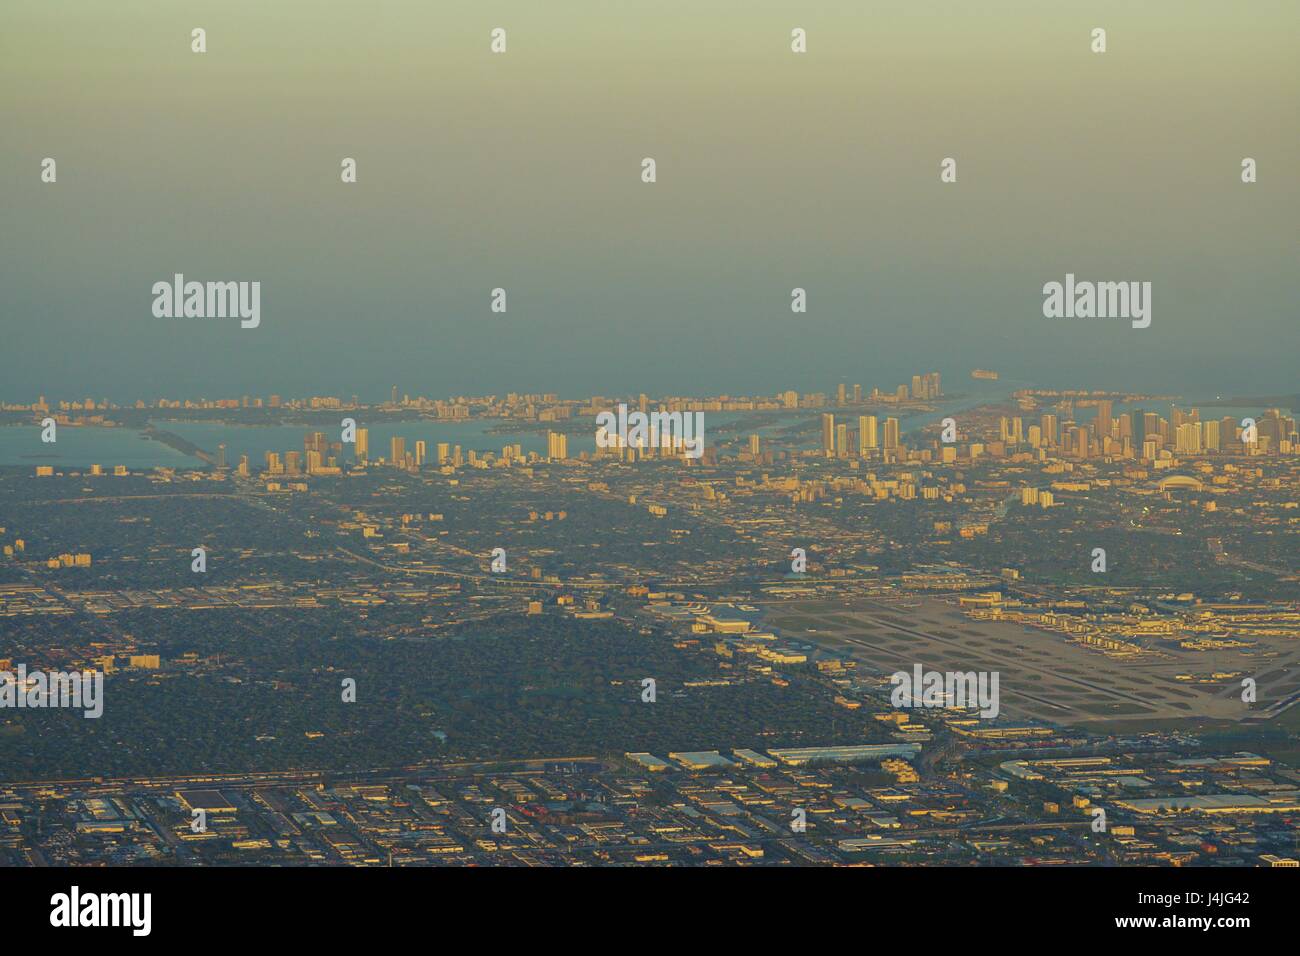 Aerial view of Miami, Florida, and the Miami International Airport (MIA) Stock Photo